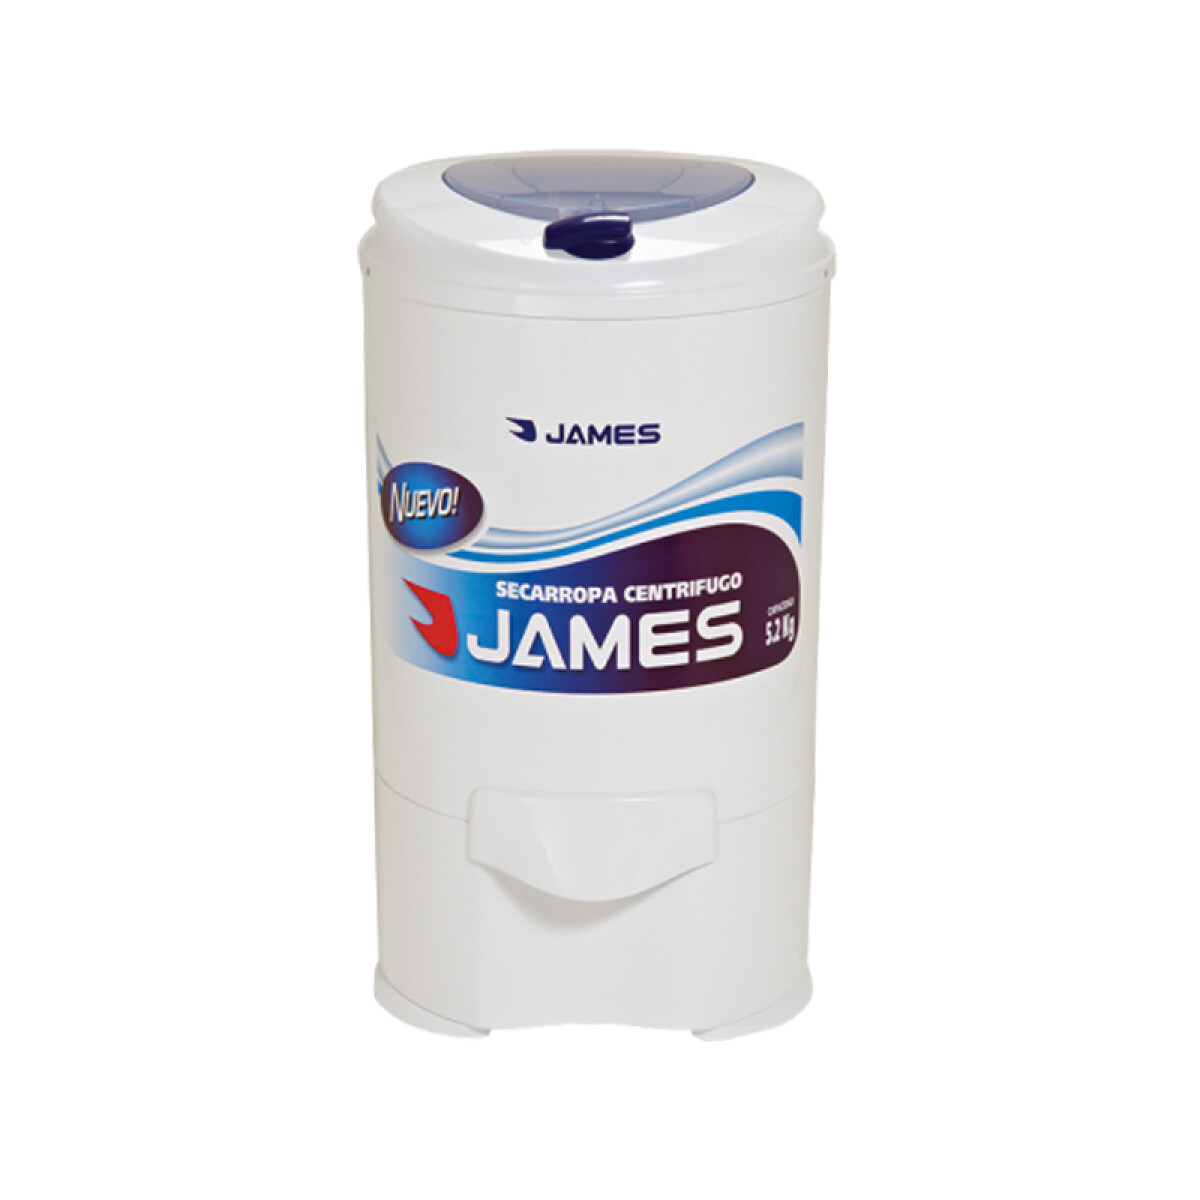 Centrifugadora James 5,2kg. C-752 